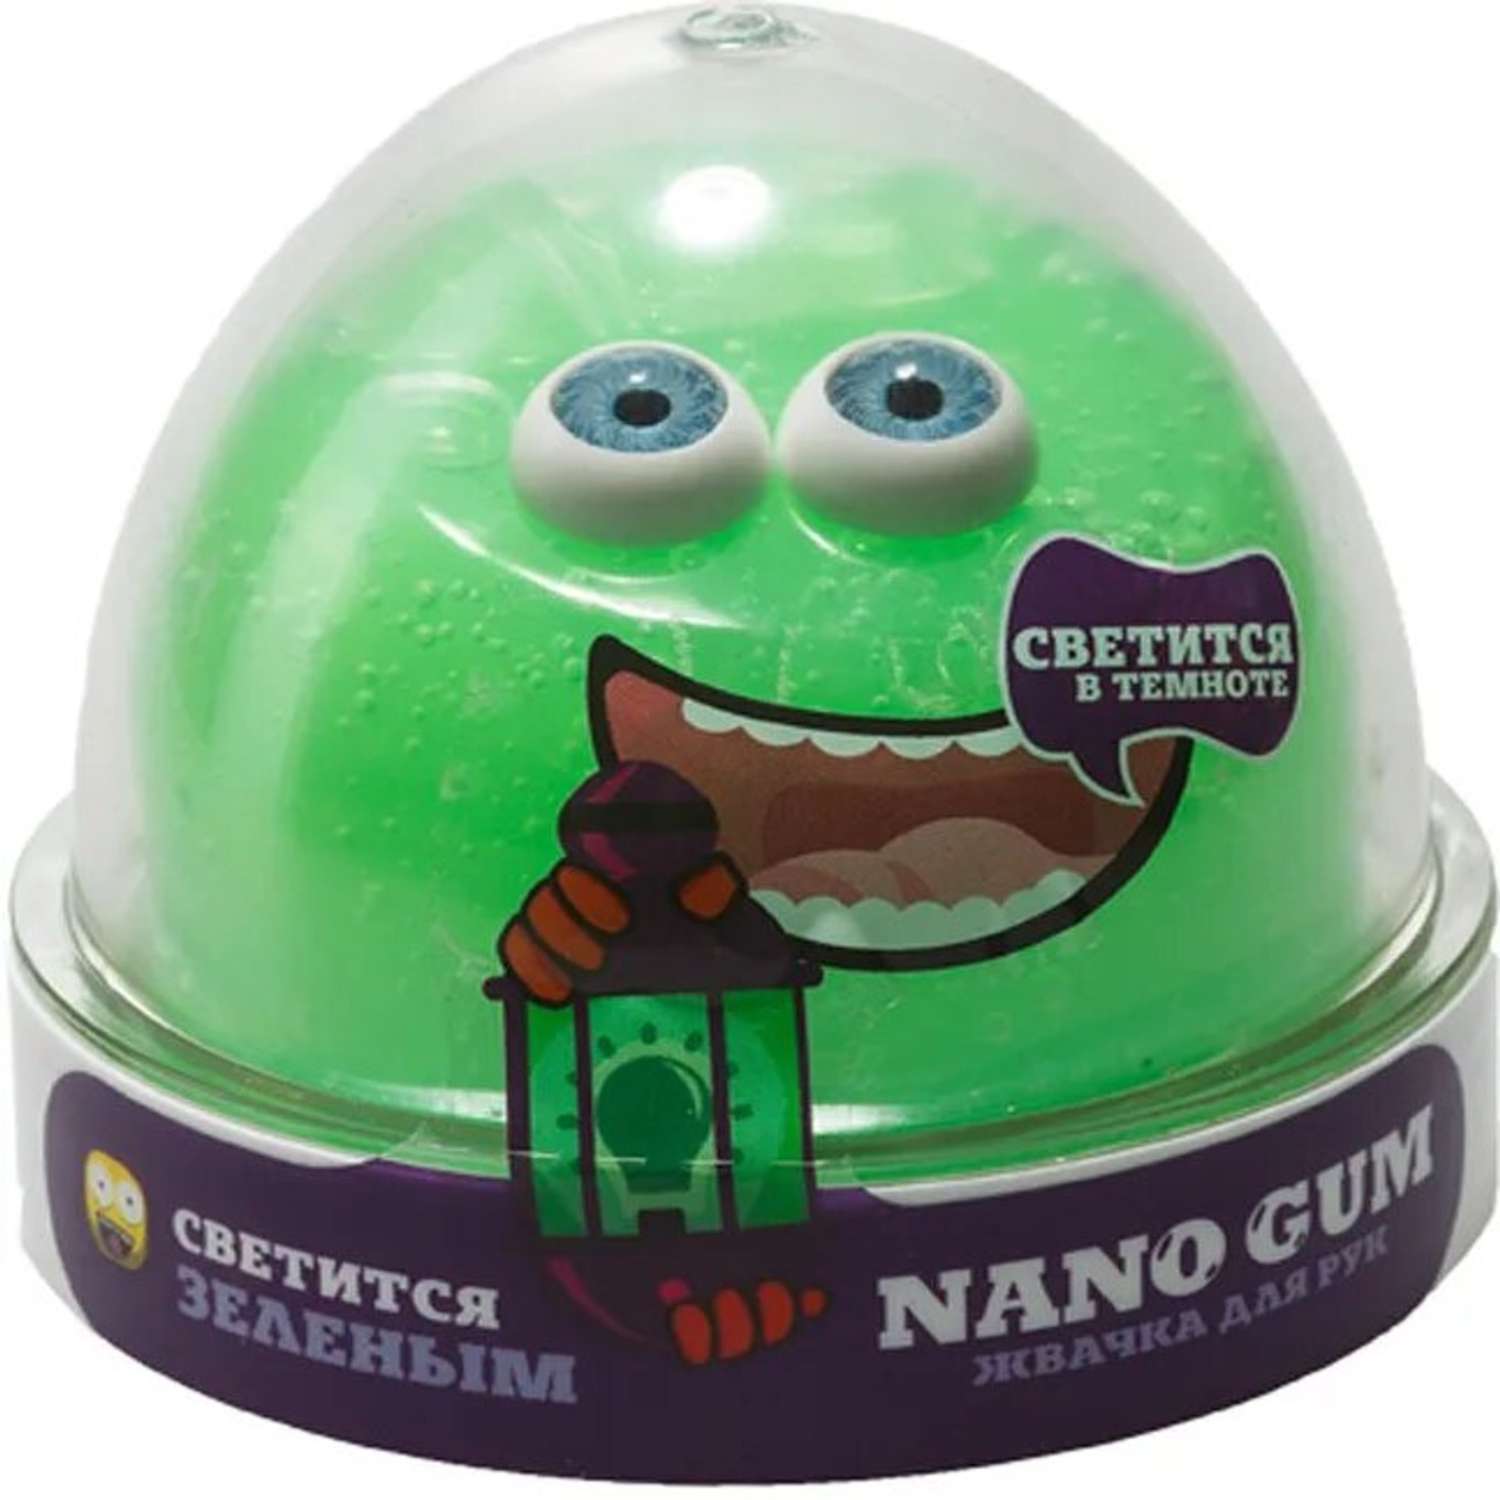 Жвачка для рук Nano Gum Светится зеленым - фото 1